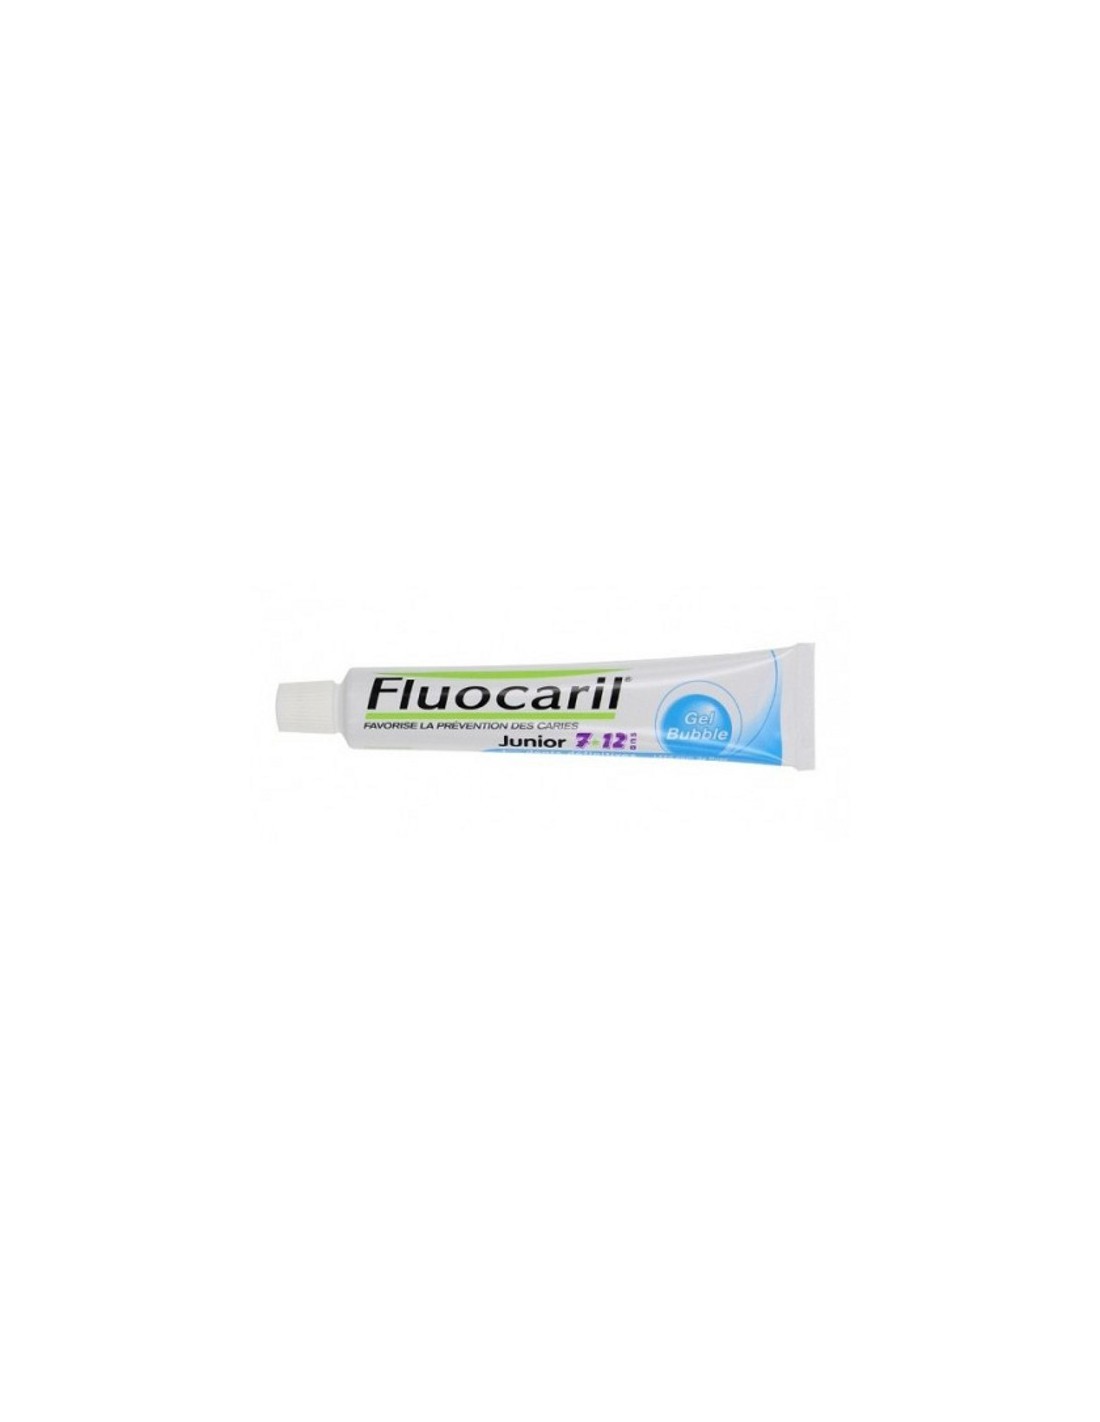 Fluocaril Junior Pasta Dental 7-12 Años Sabor Chicle 50ml